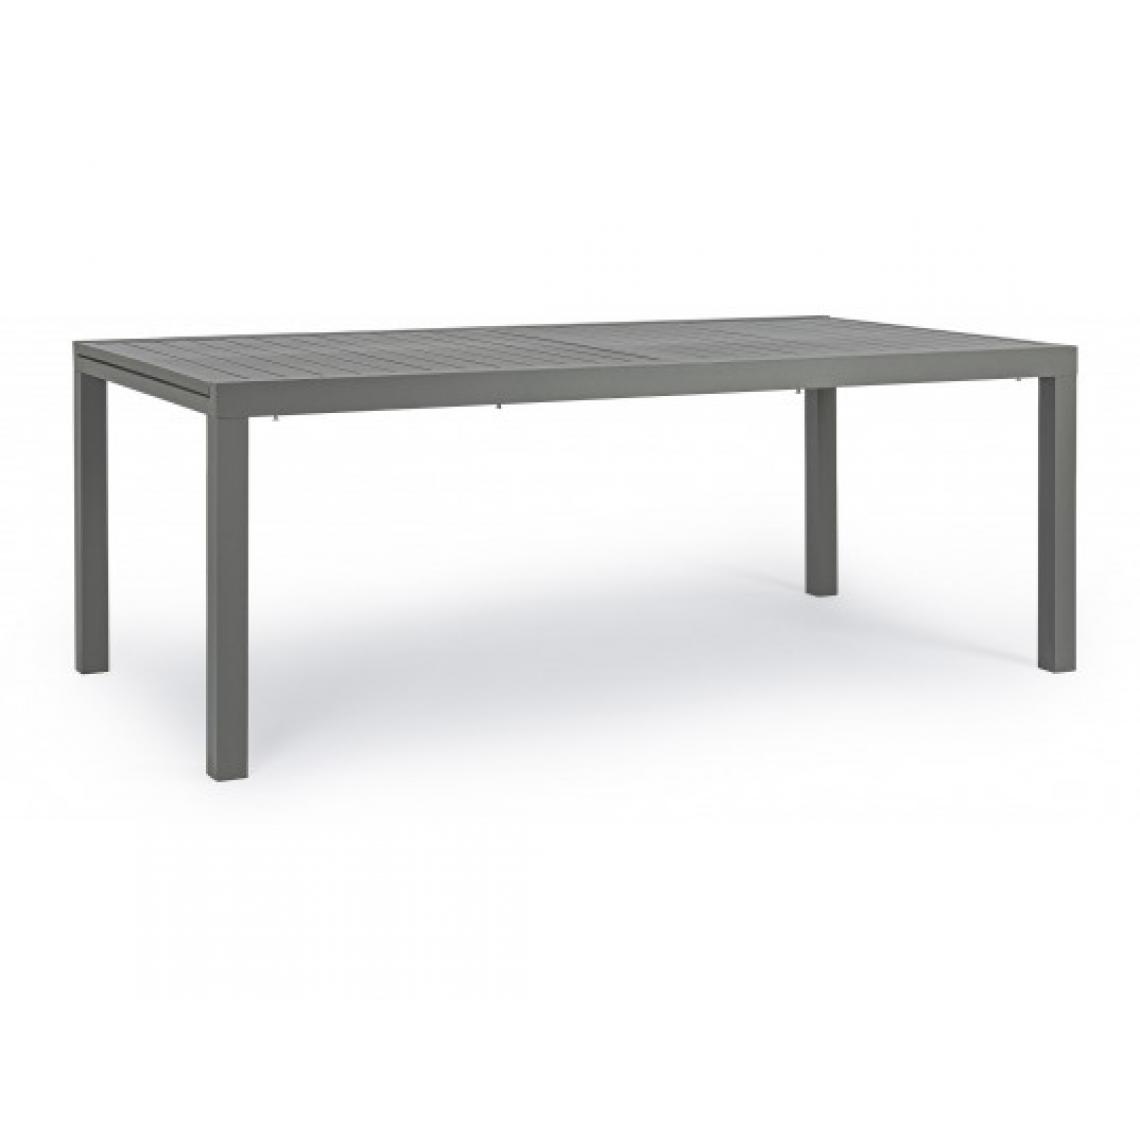 Bizzotto - Table extérieure Table Hilde 200/300 x 100 anthracite - Tables de jardin